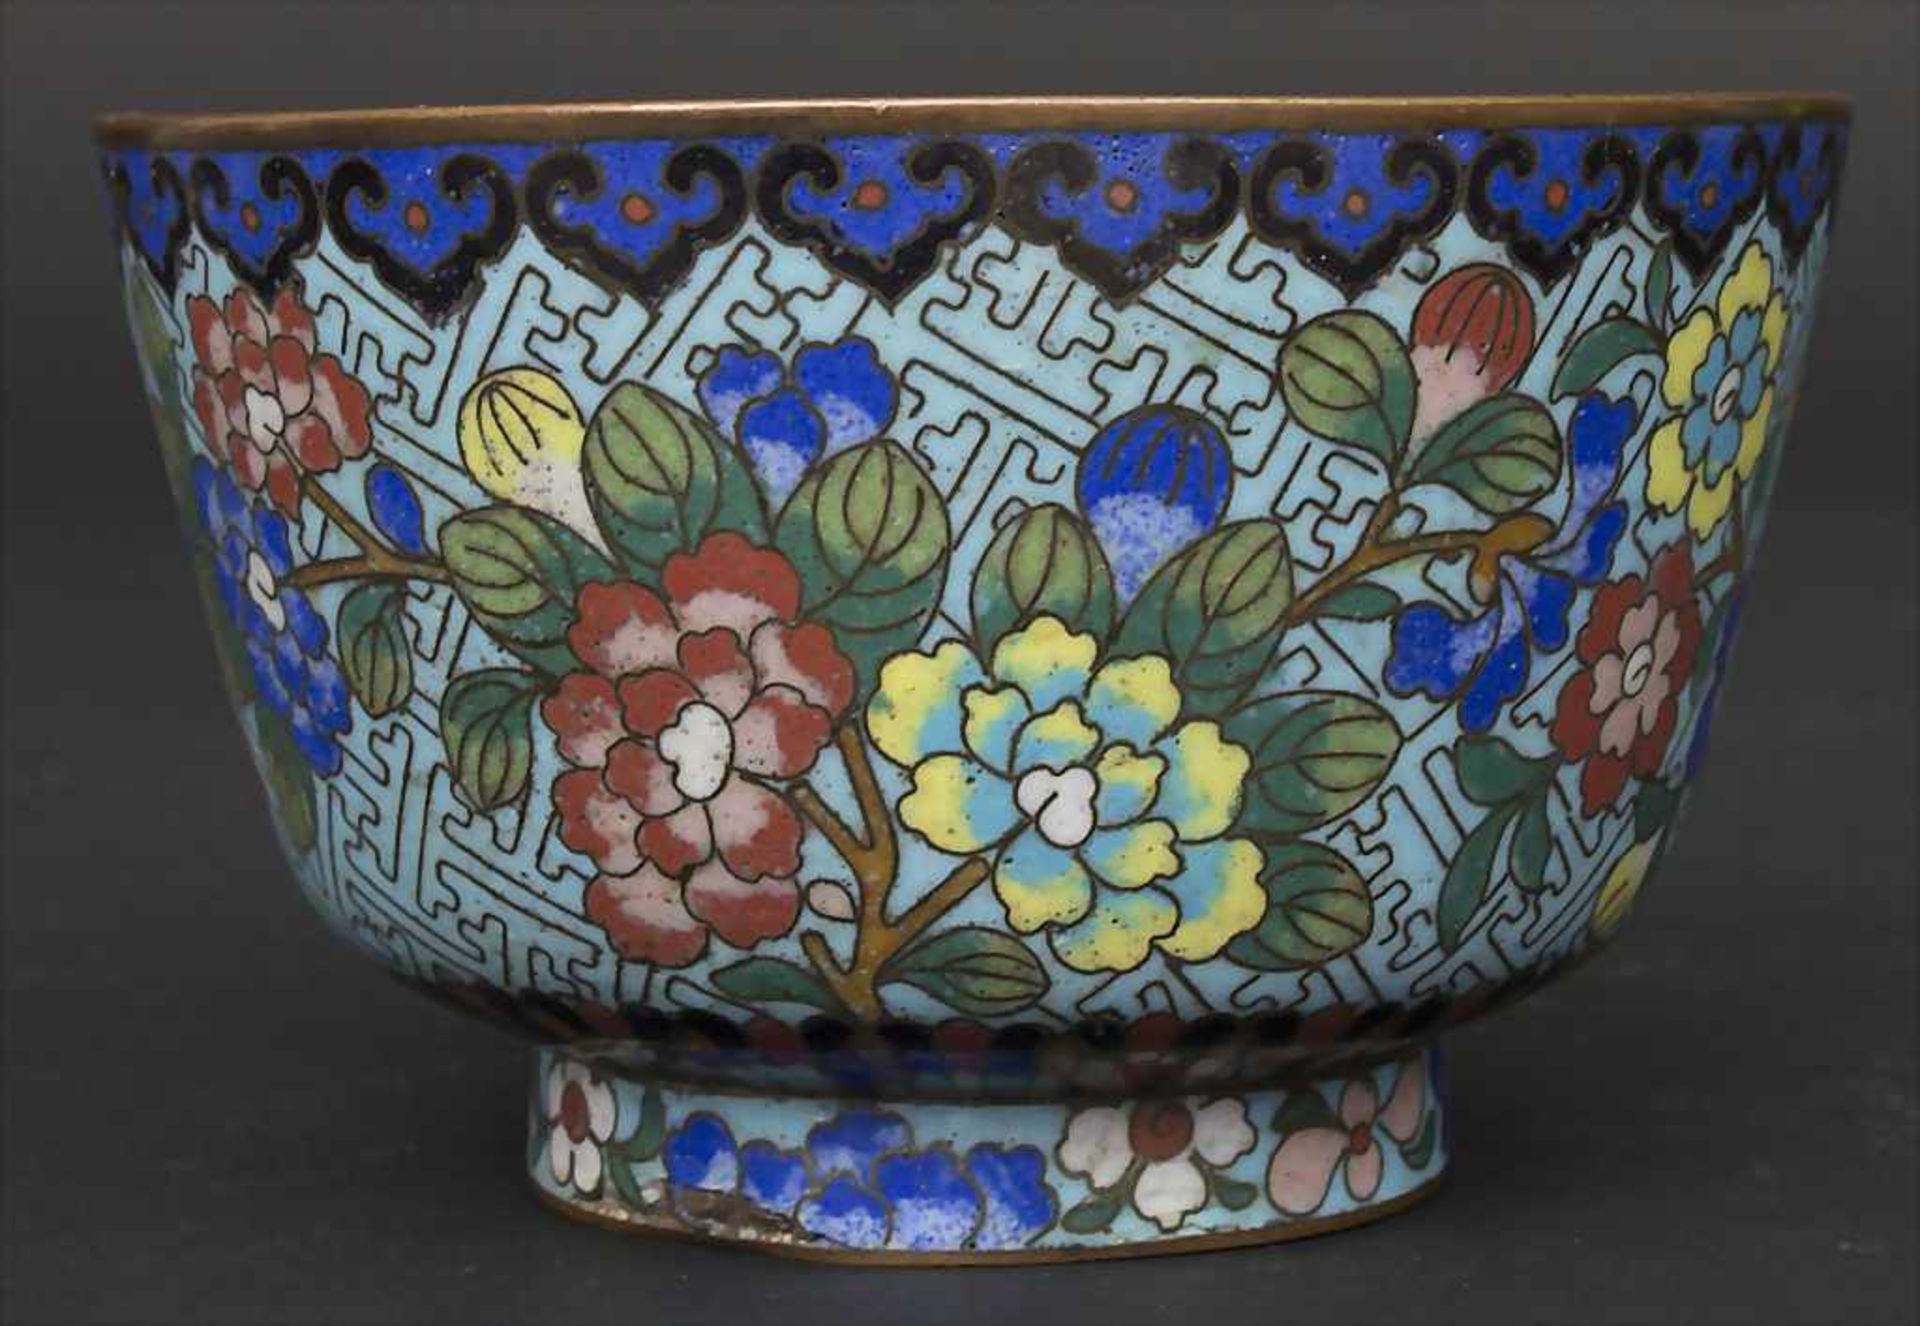 Cloisonné-Kumme 'Blütensträucher' / A Cloisonné bowl 'flowering shrubs', China, um 1900 - Image 2 of 6